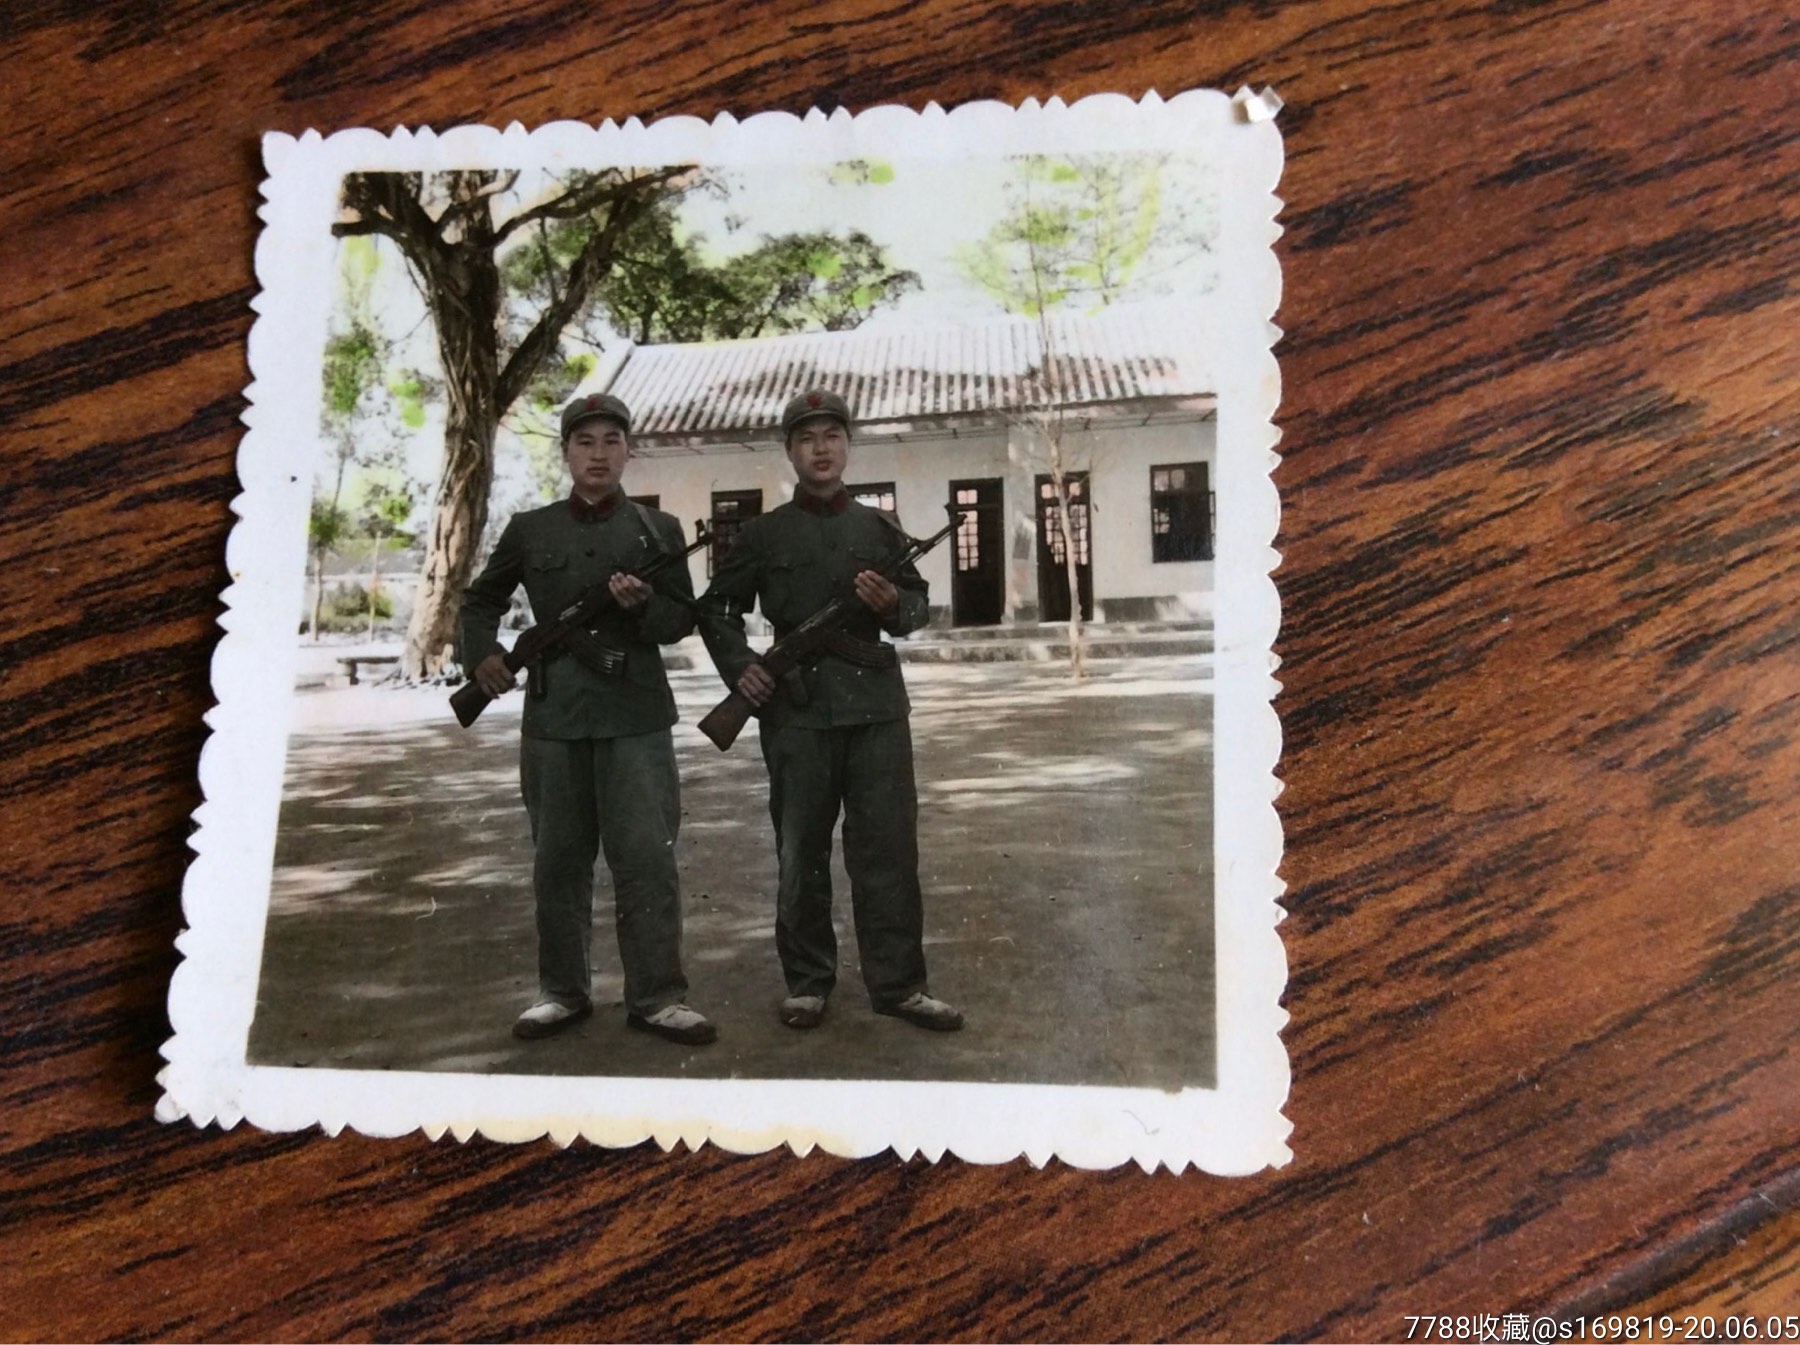 彩色照片,两个军人手握枪合影